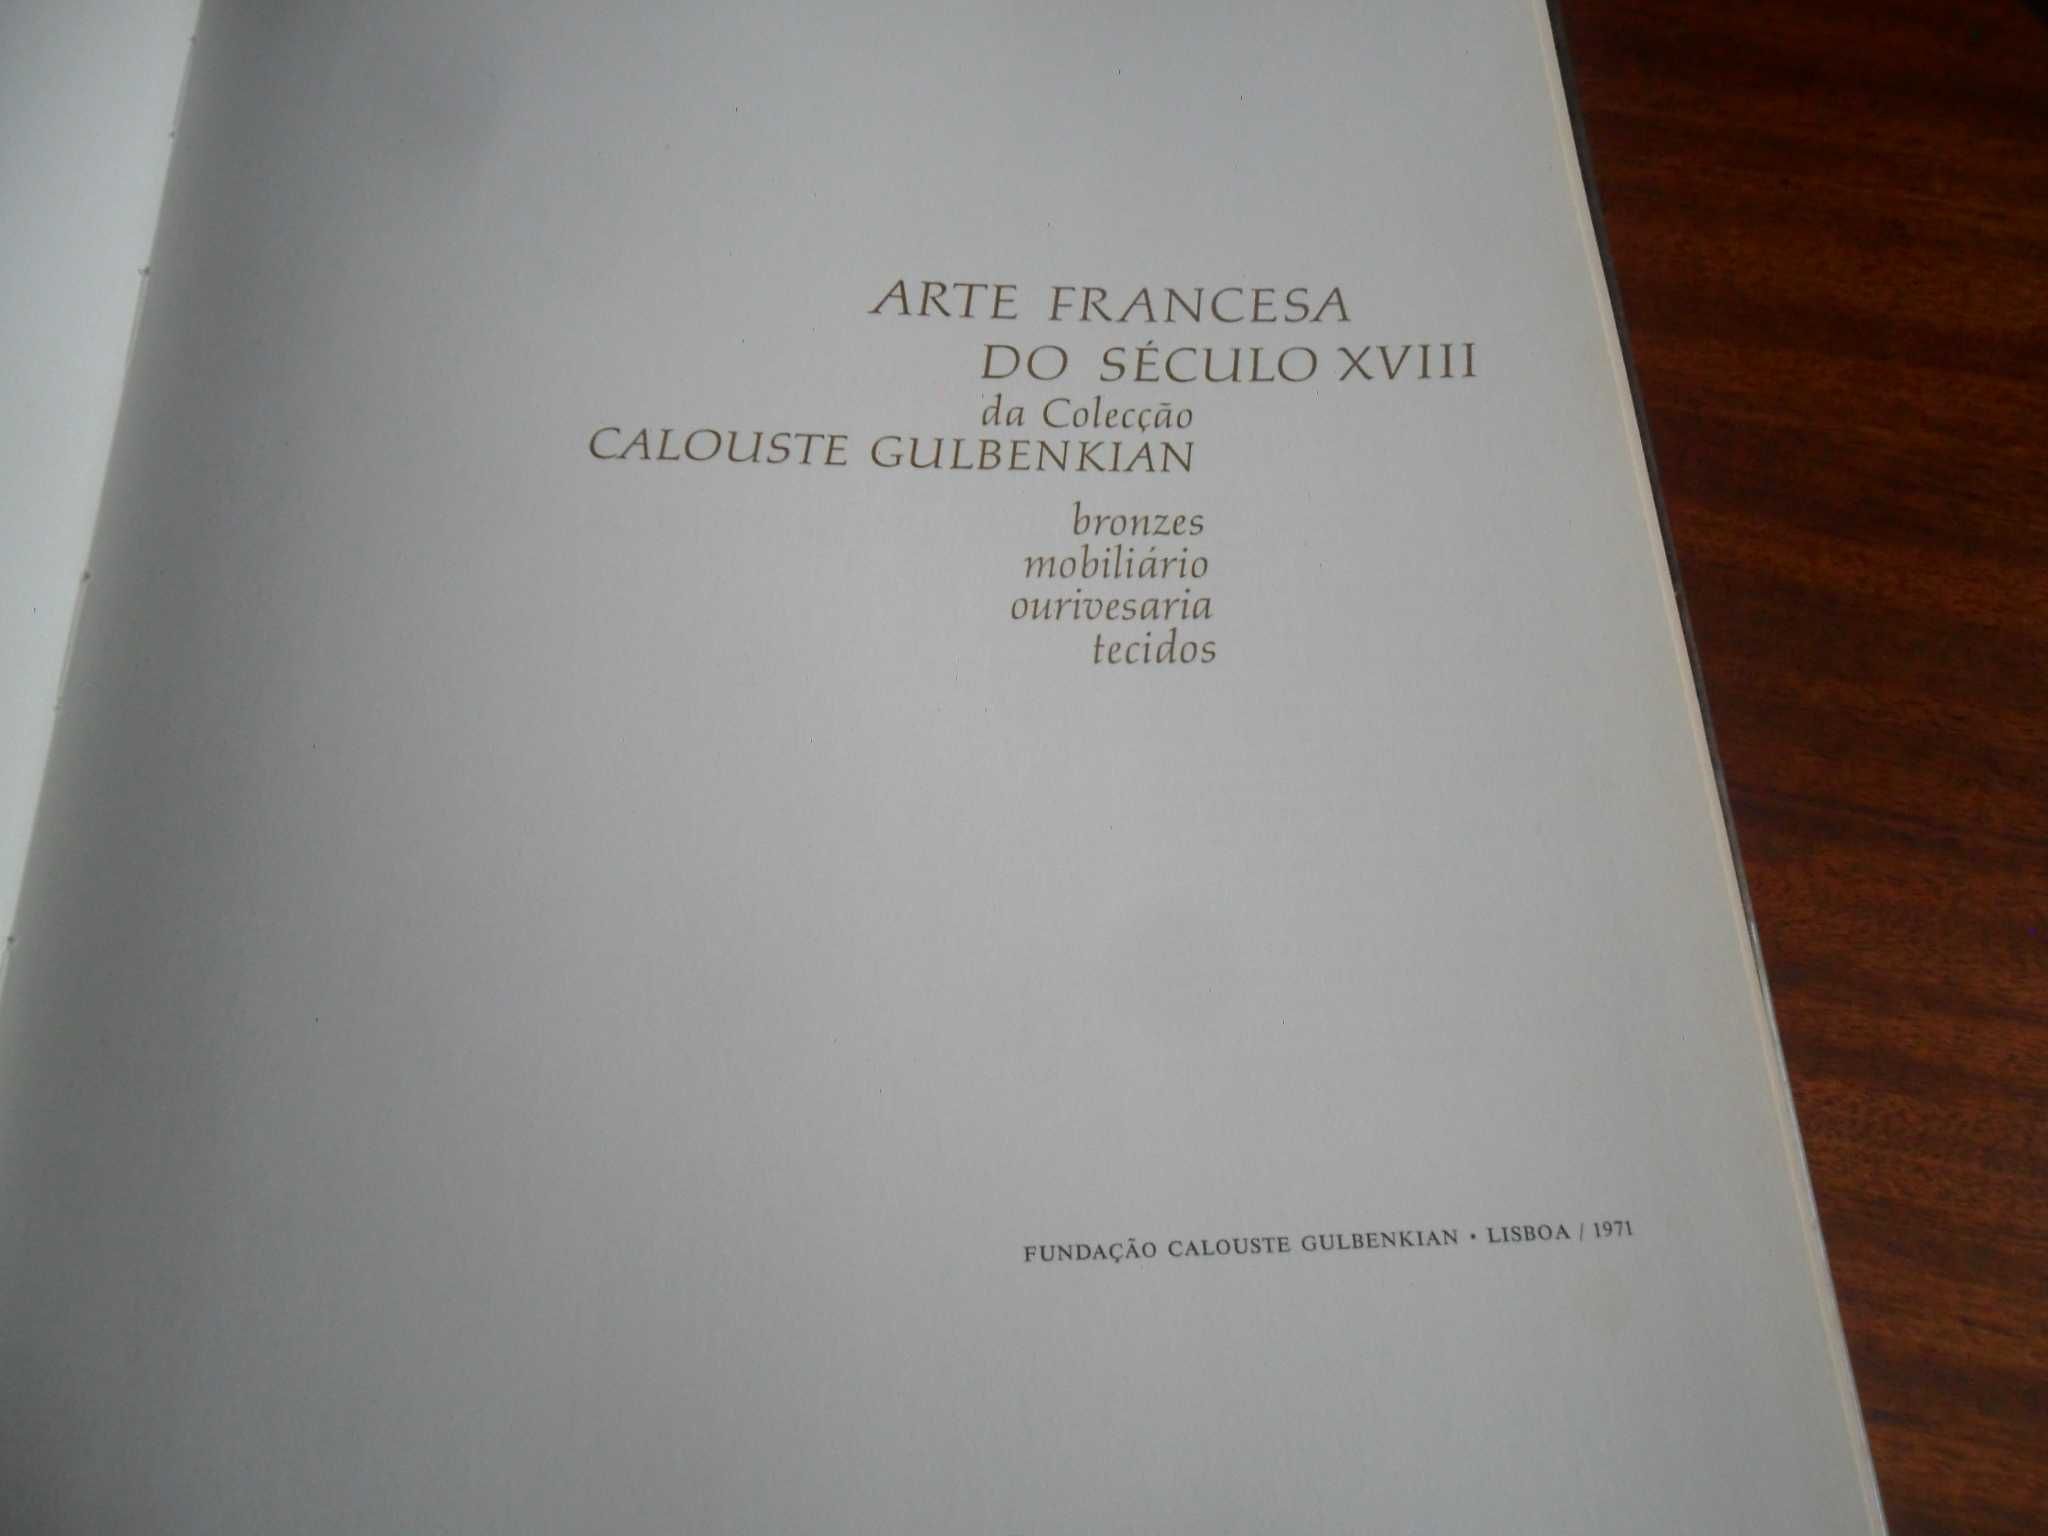 "Arte Francesa do século XVIII da Coleção Calouste Gulbenkian" - 1971